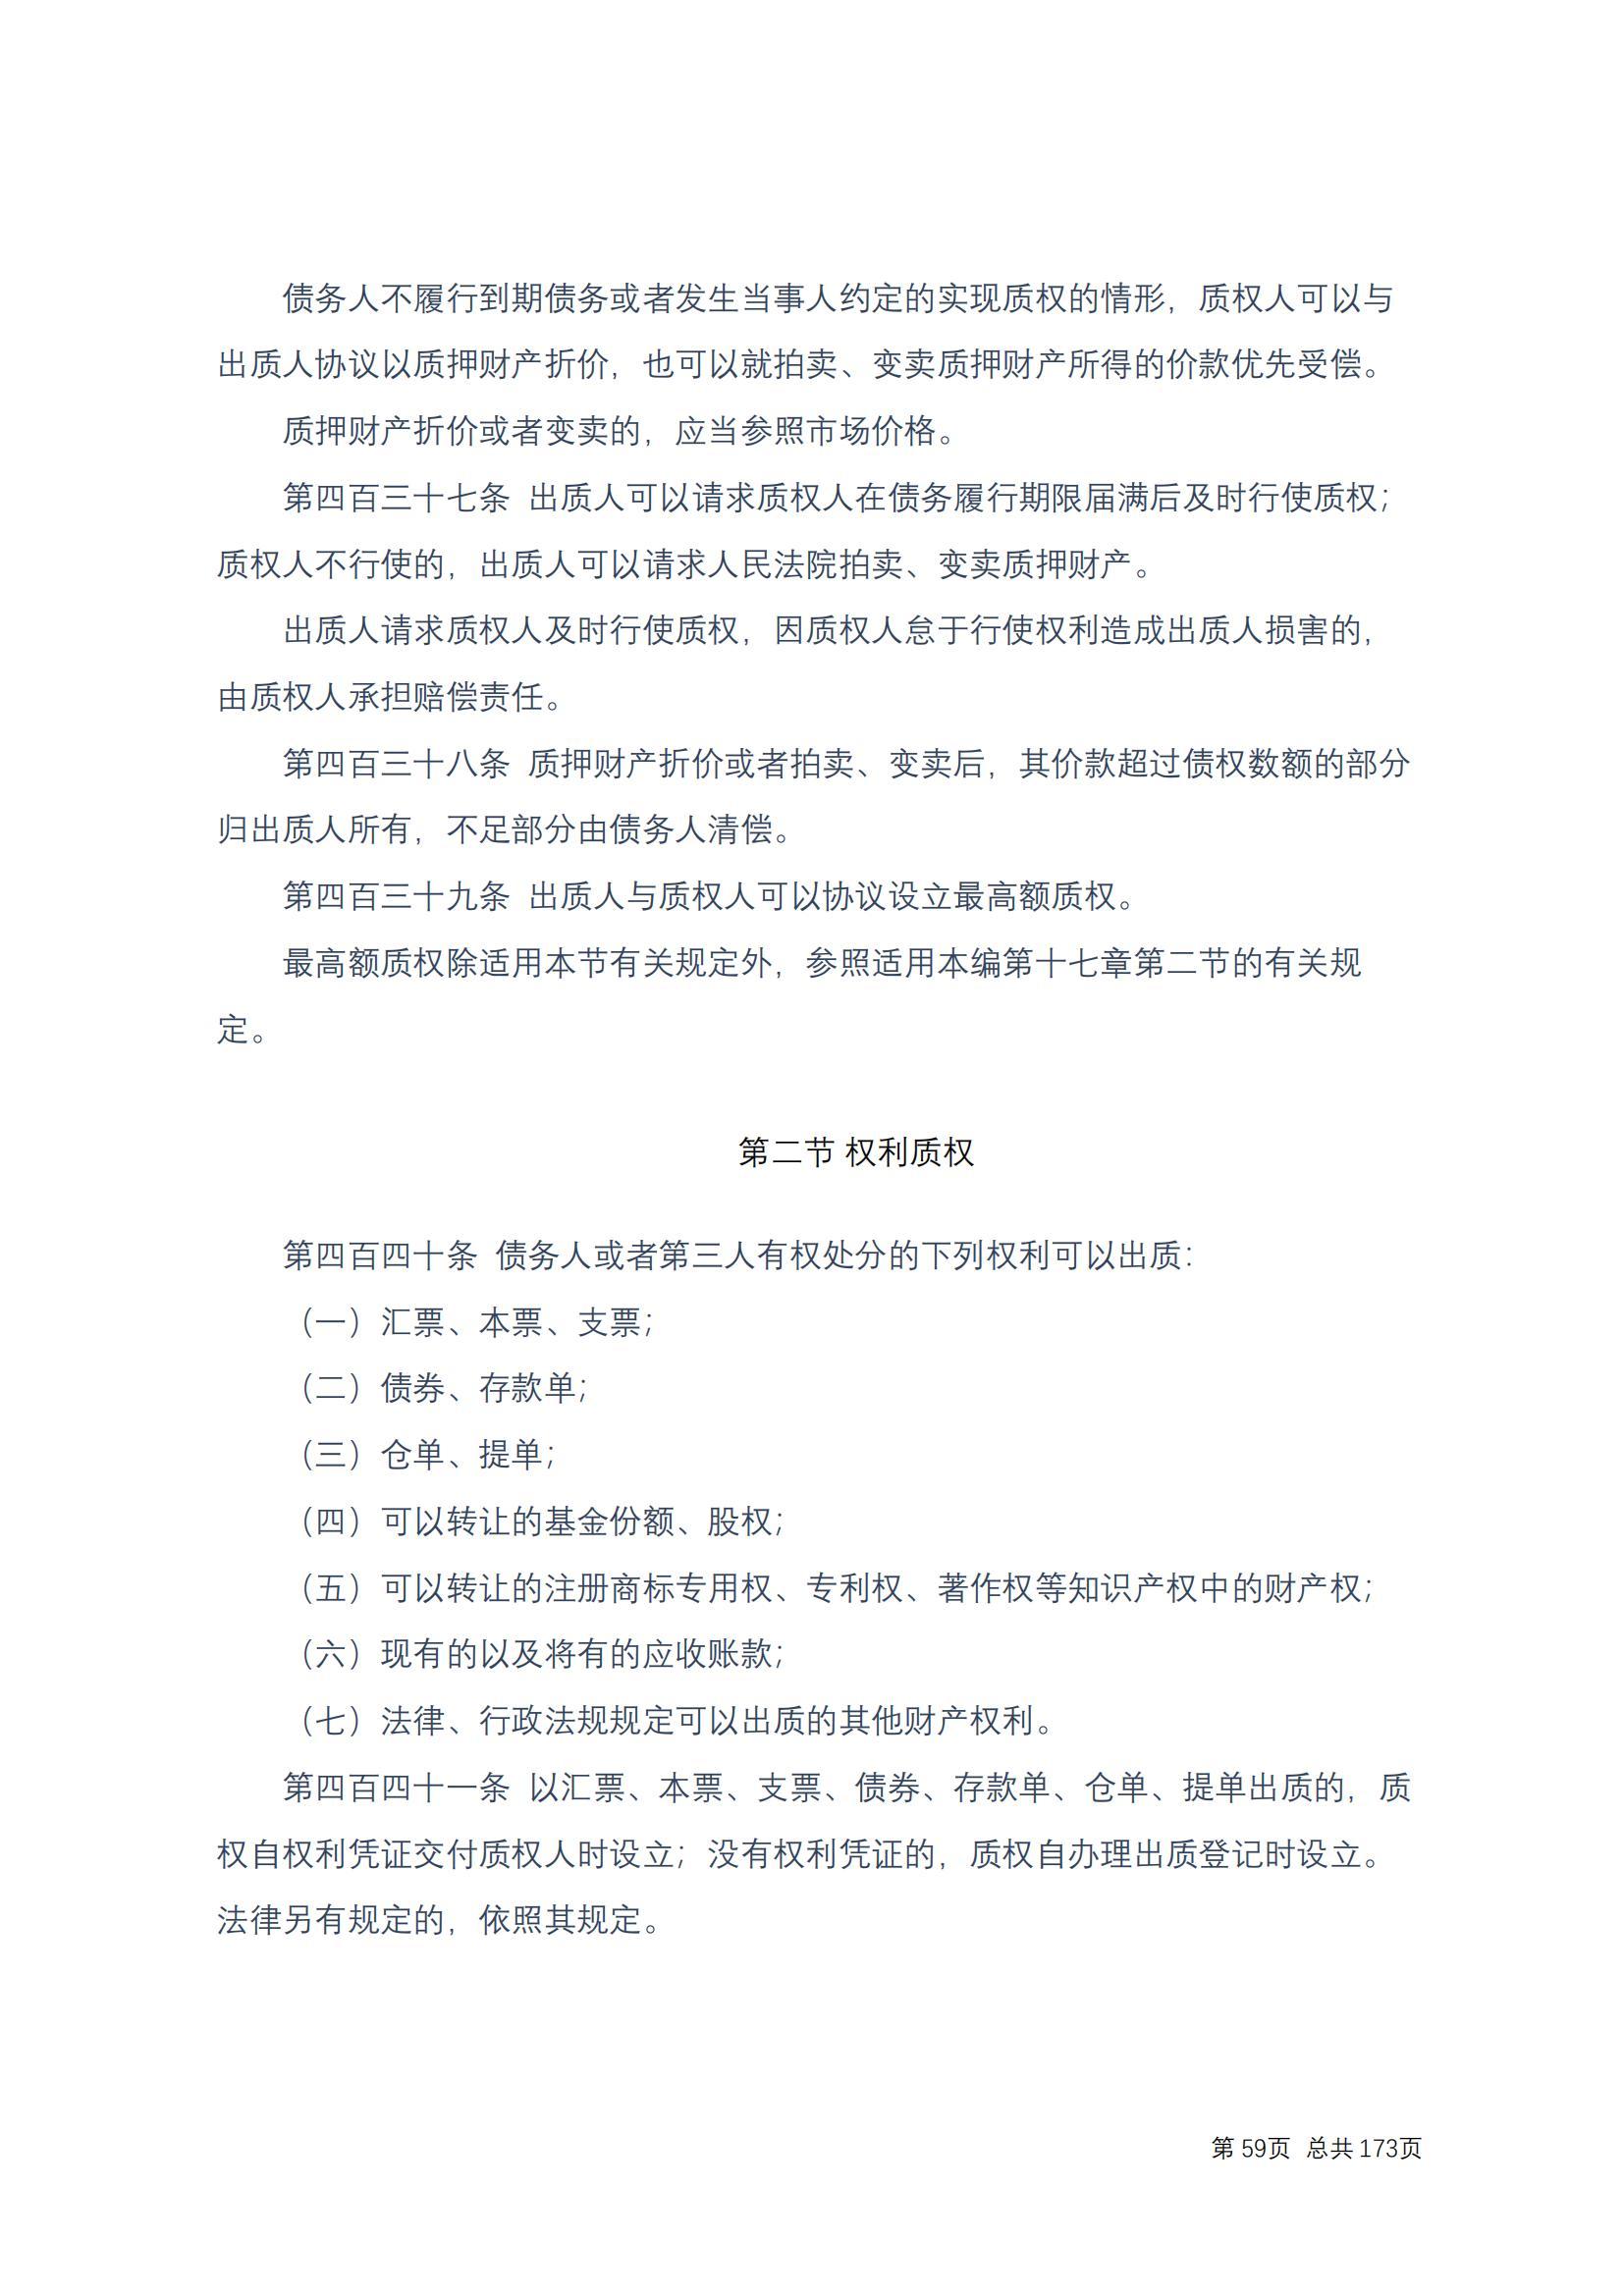 中华人民共和国民法典 修改过_58